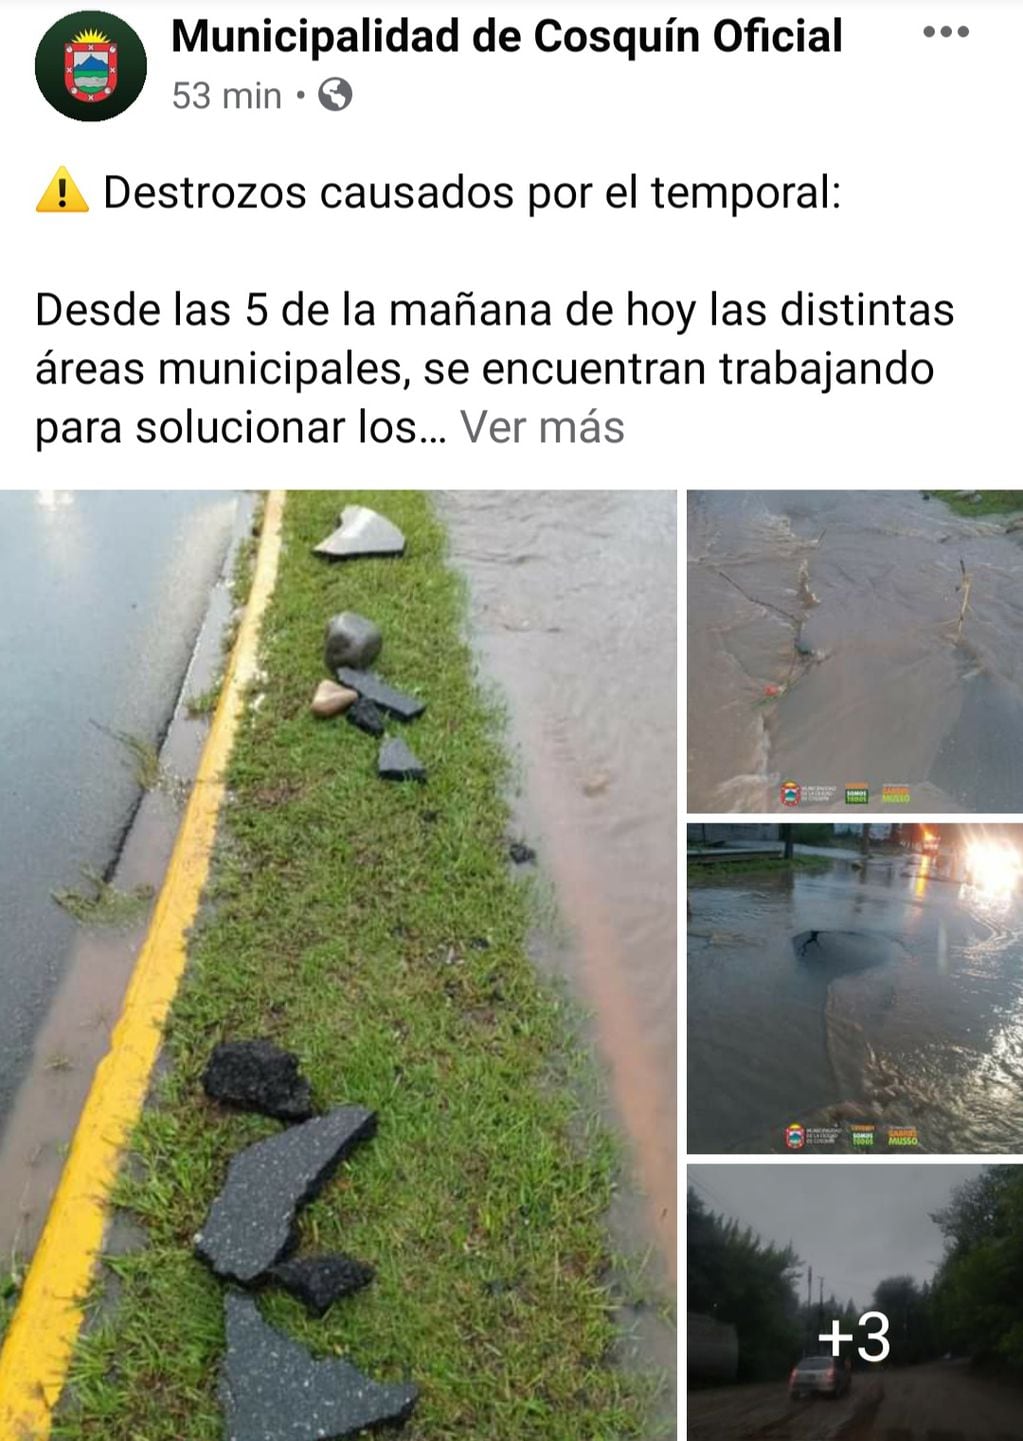 El comunicado emitido este sábado por la Municipalidad de la ciudad de Cosquín a través de su cuenta oficial en Facebook.